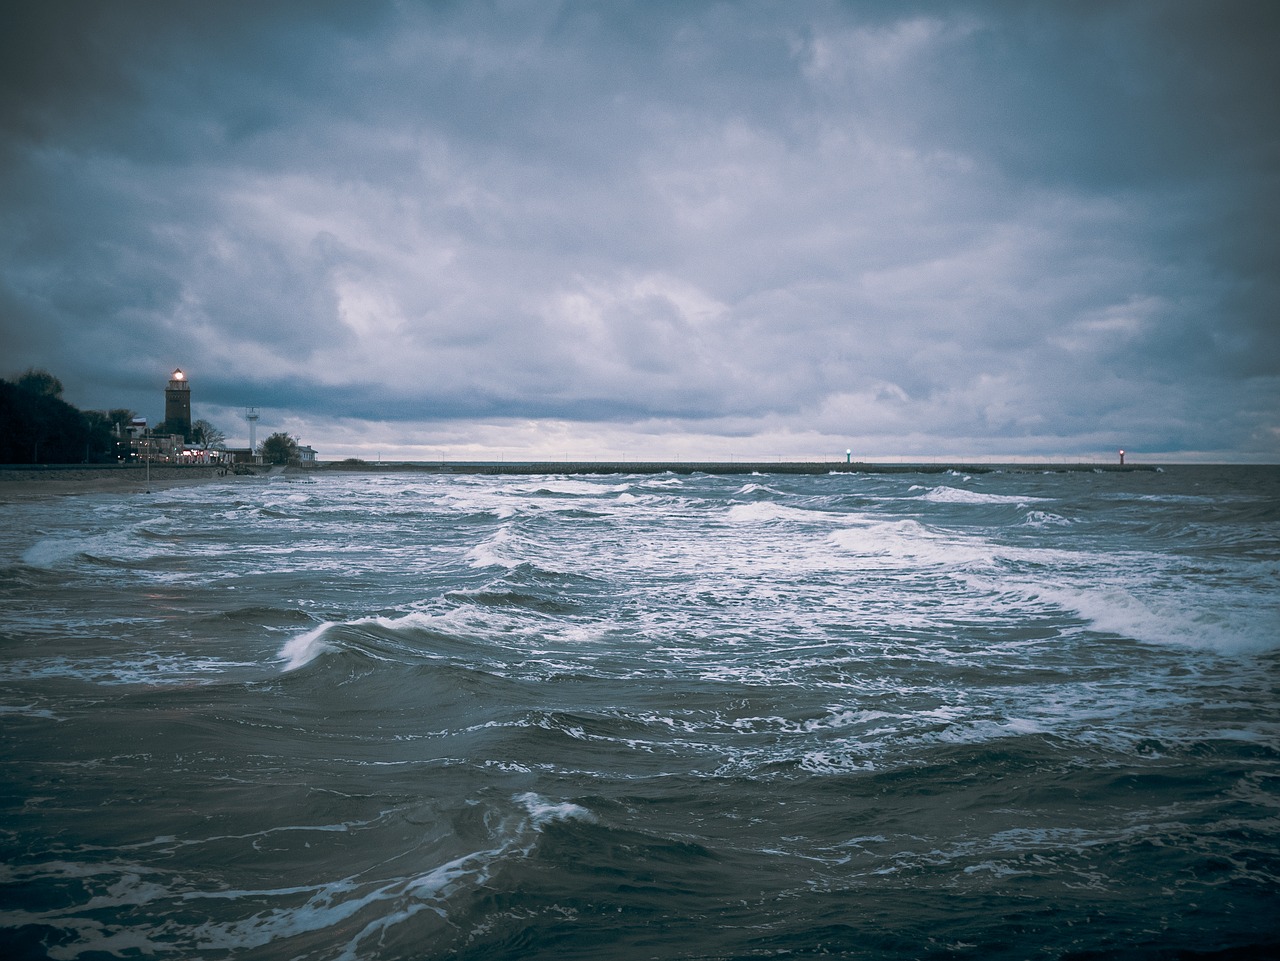 Bałtycka Odyseja – oczyścili z plastiku plaże Bałtyku